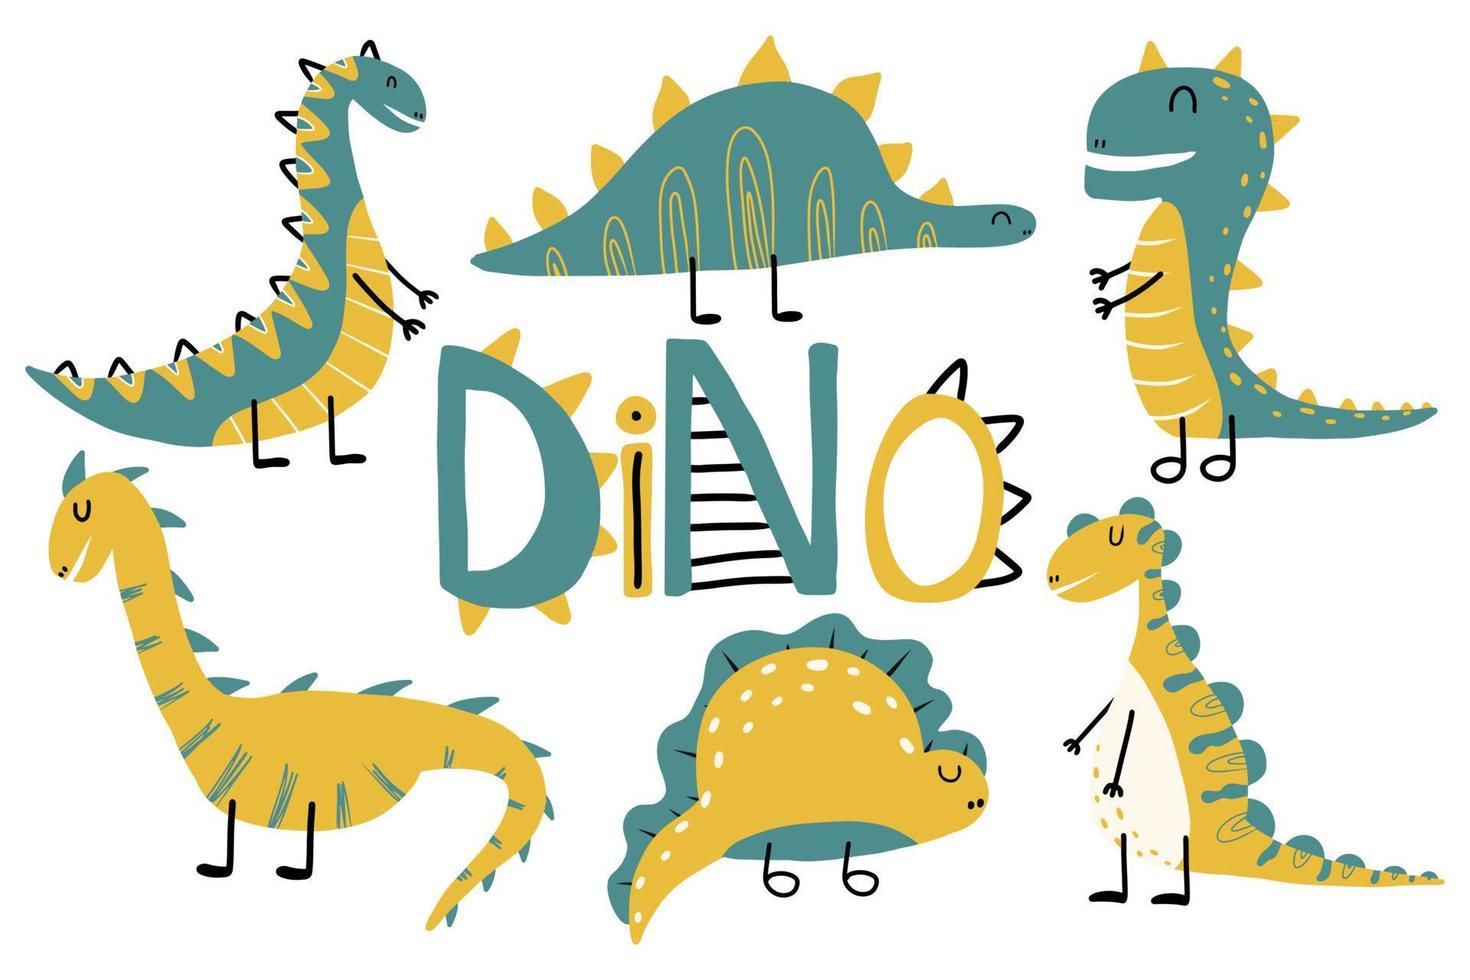 conjunto de crianças vetor de dinossauros fofos. dinossauro desenhado. dinossauros nas cores verde e amarelo.